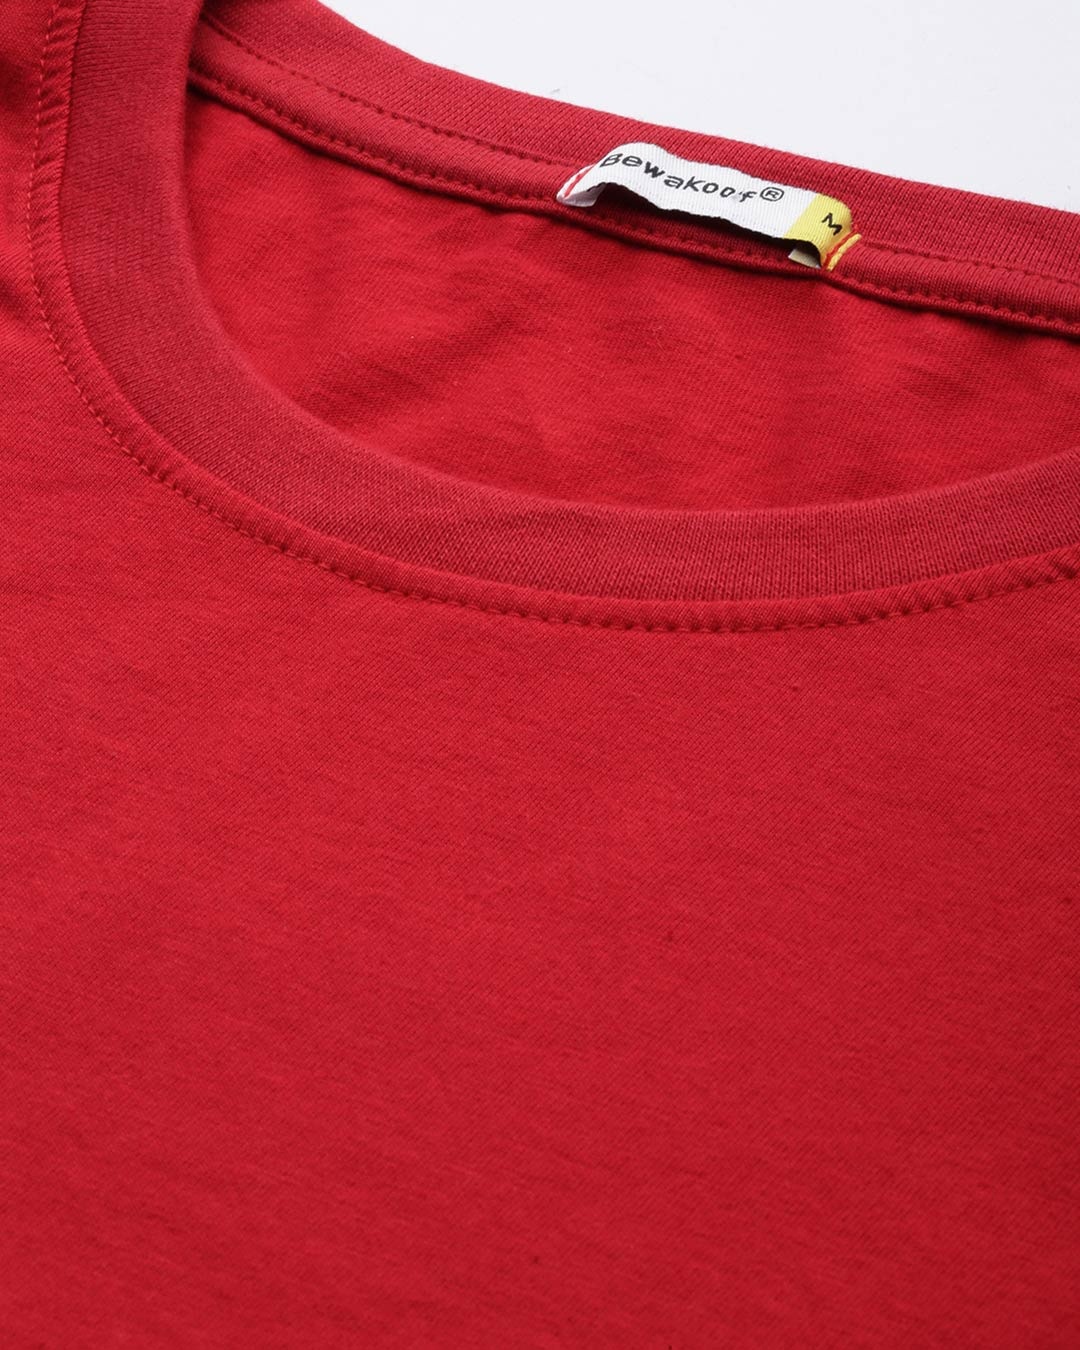 Buy Men's Red NASA Astronaut T-shirt for Men red Online at Bewakoof